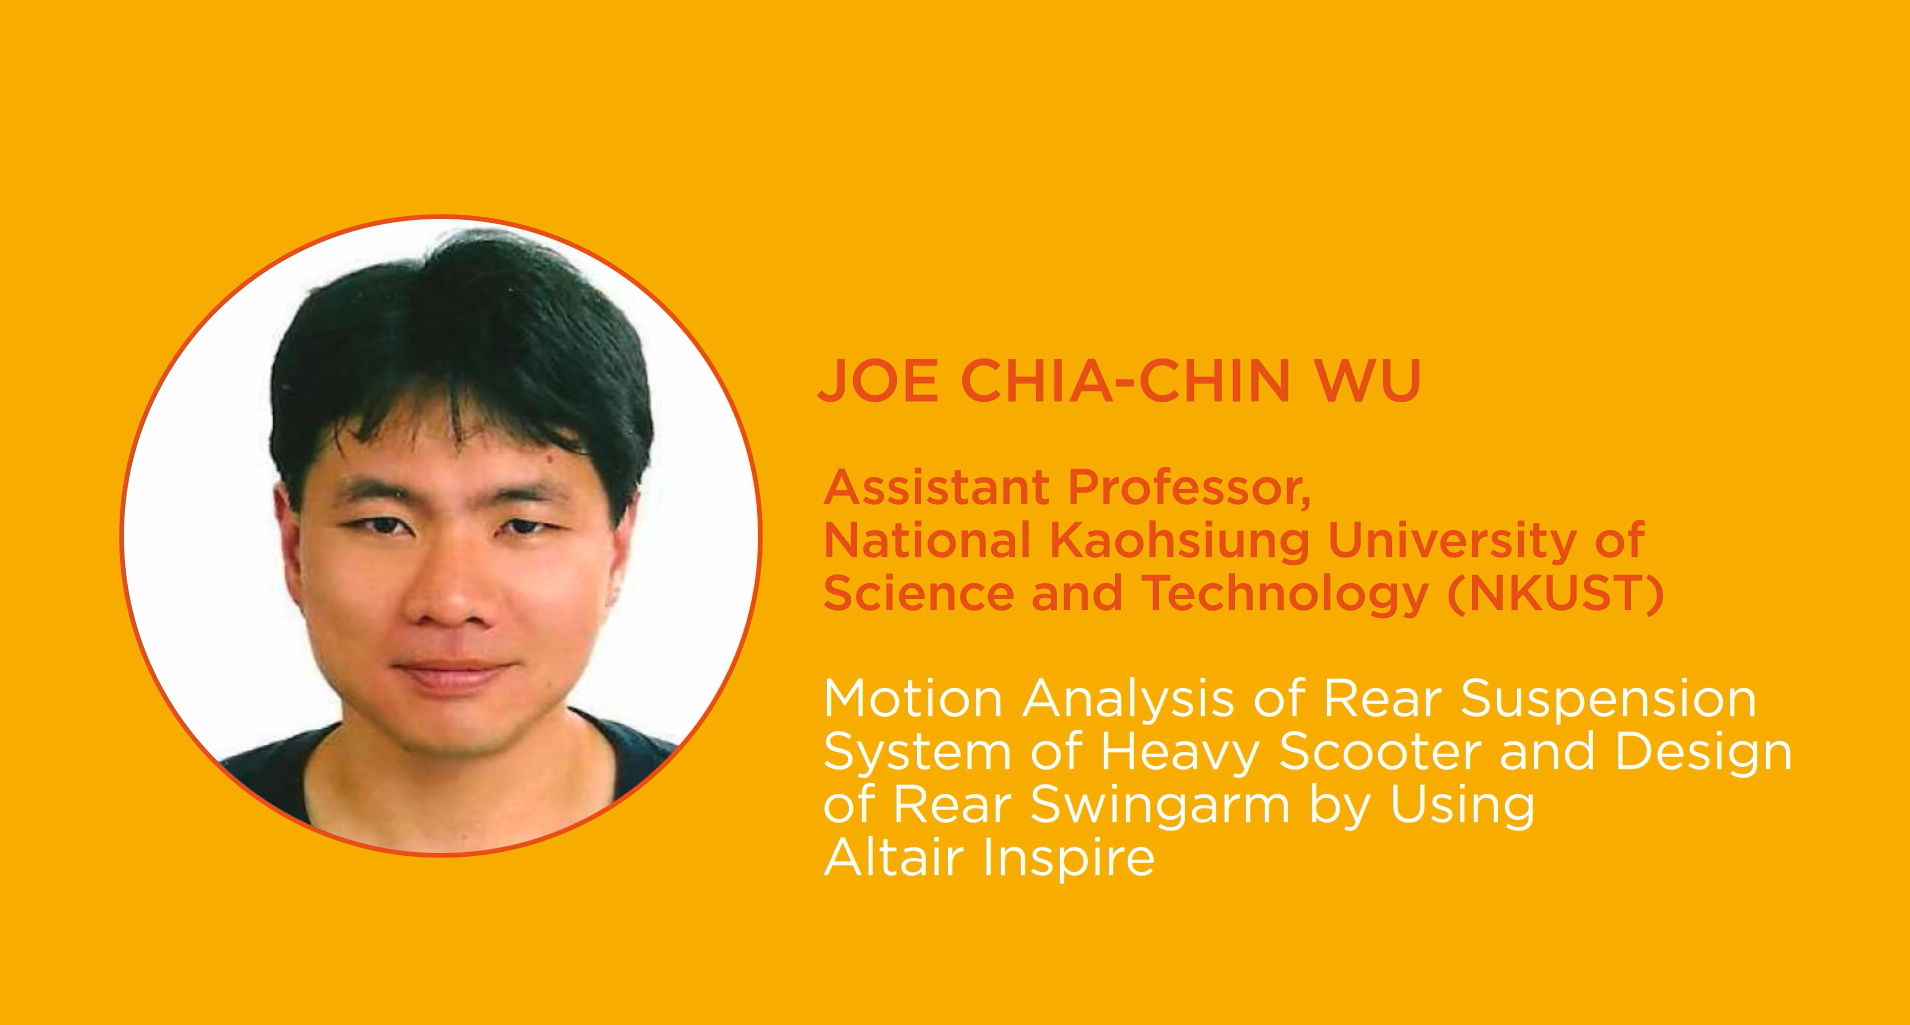 Joe Chia-Chin Wu